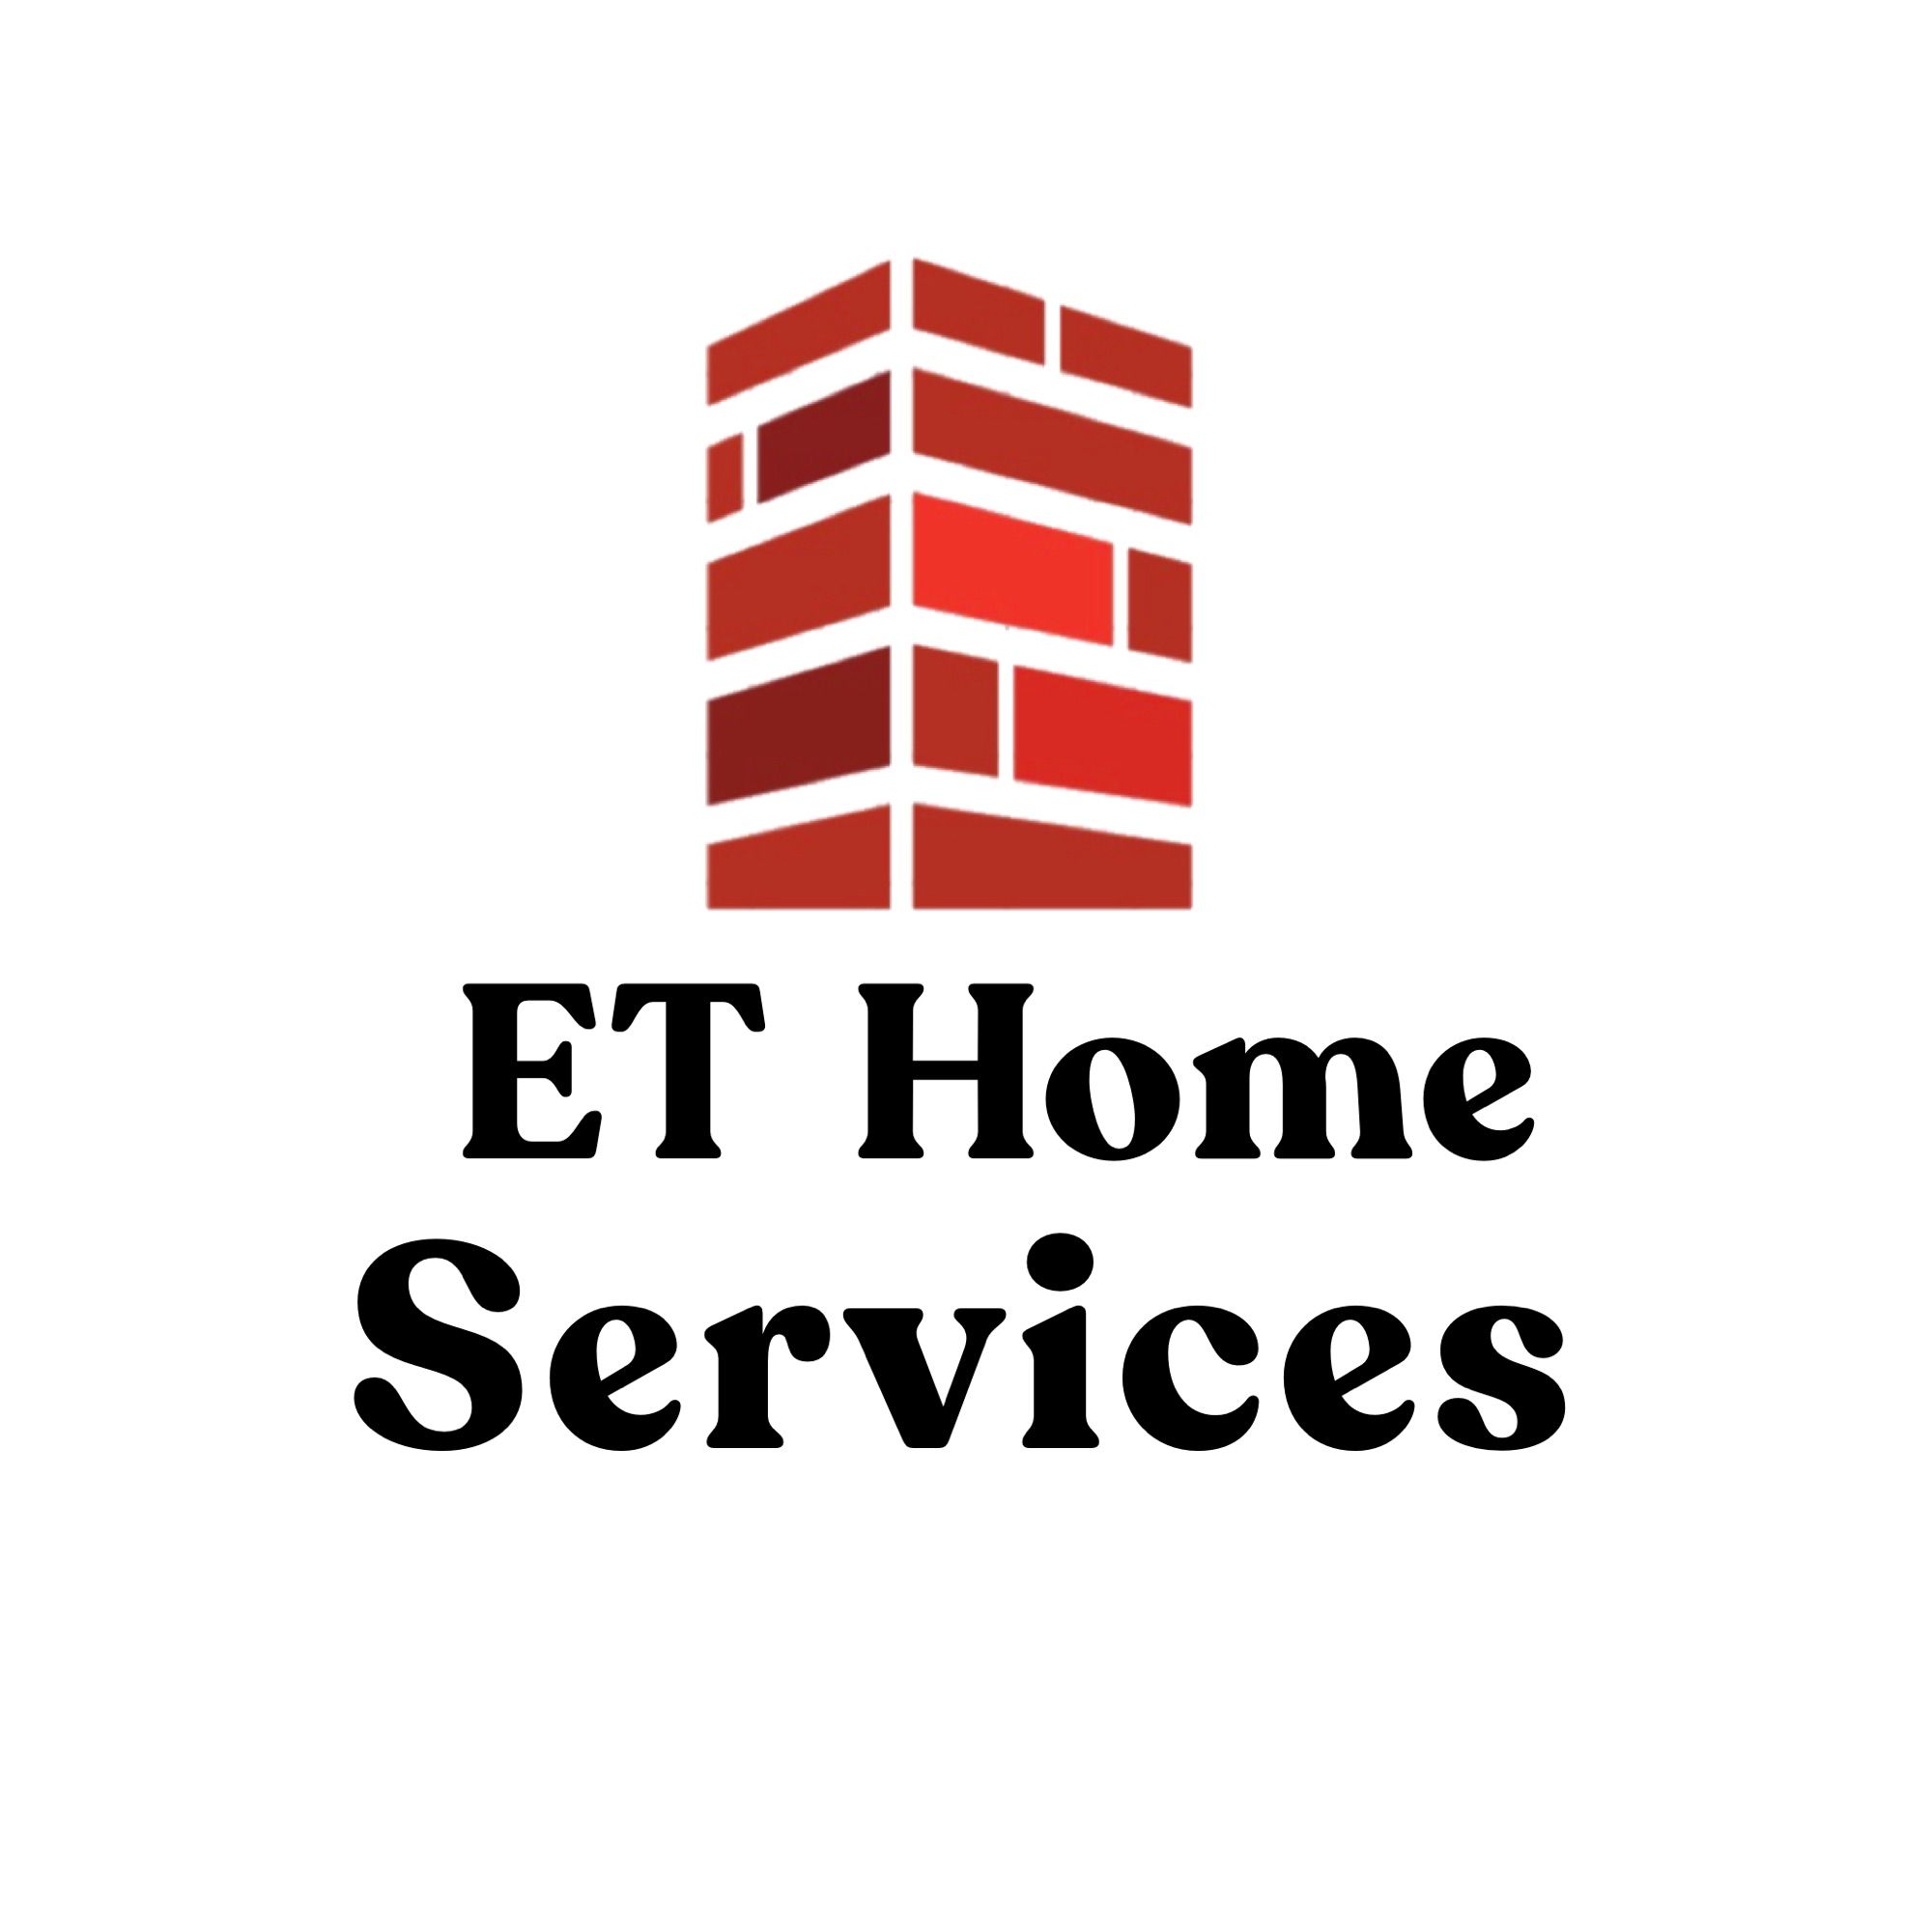 ET Home Services Logo